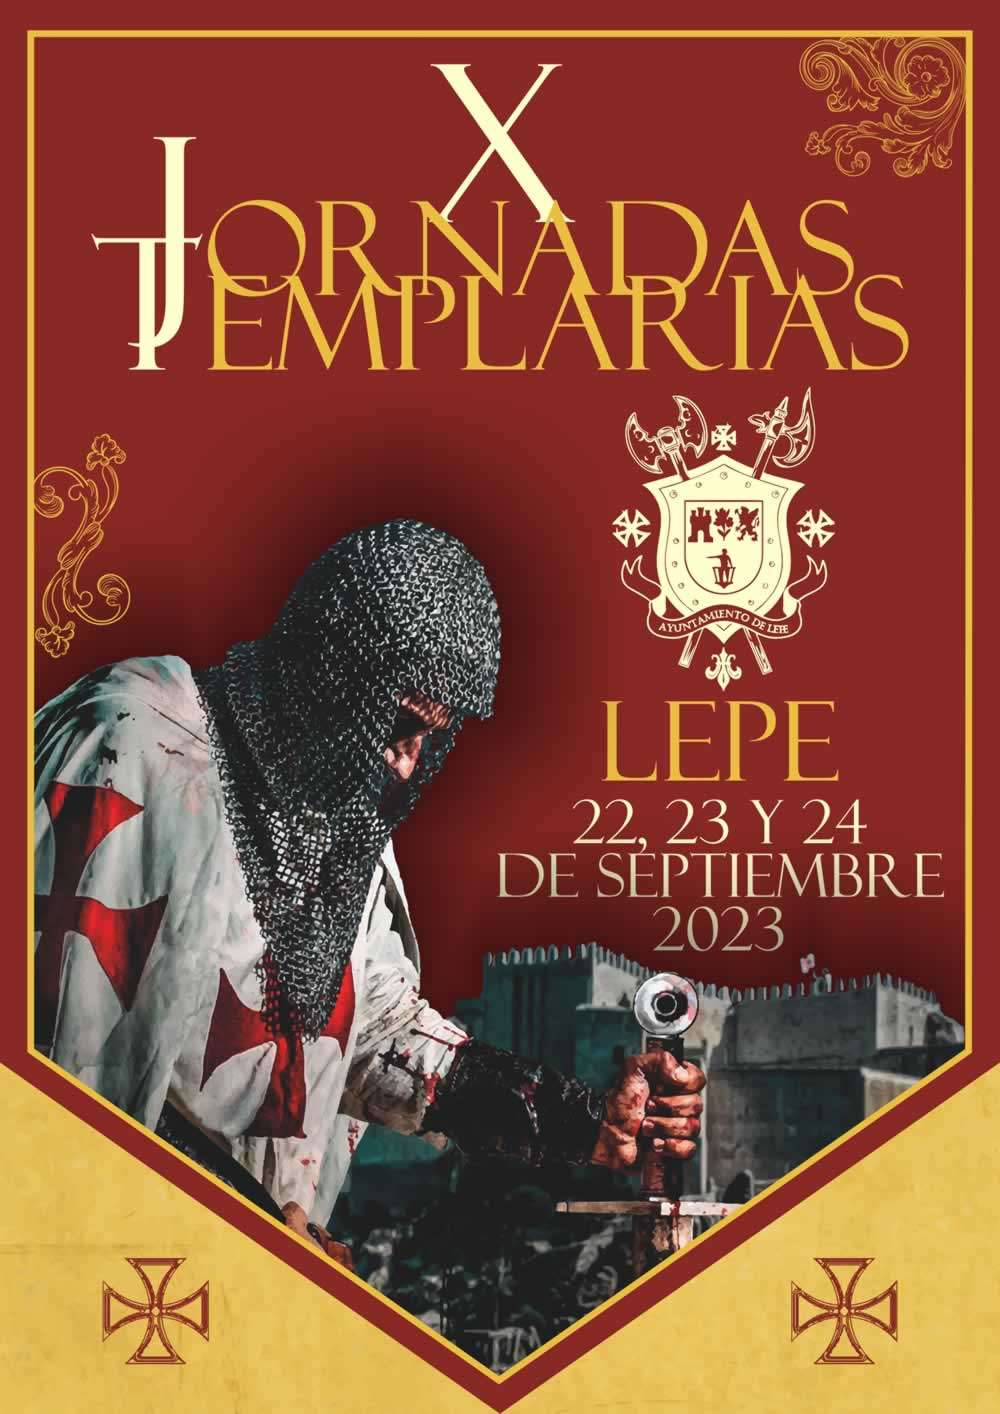 mercadosmedievales.net - Jornadas templarias de Lepe ( Huelva) 2023 cartel